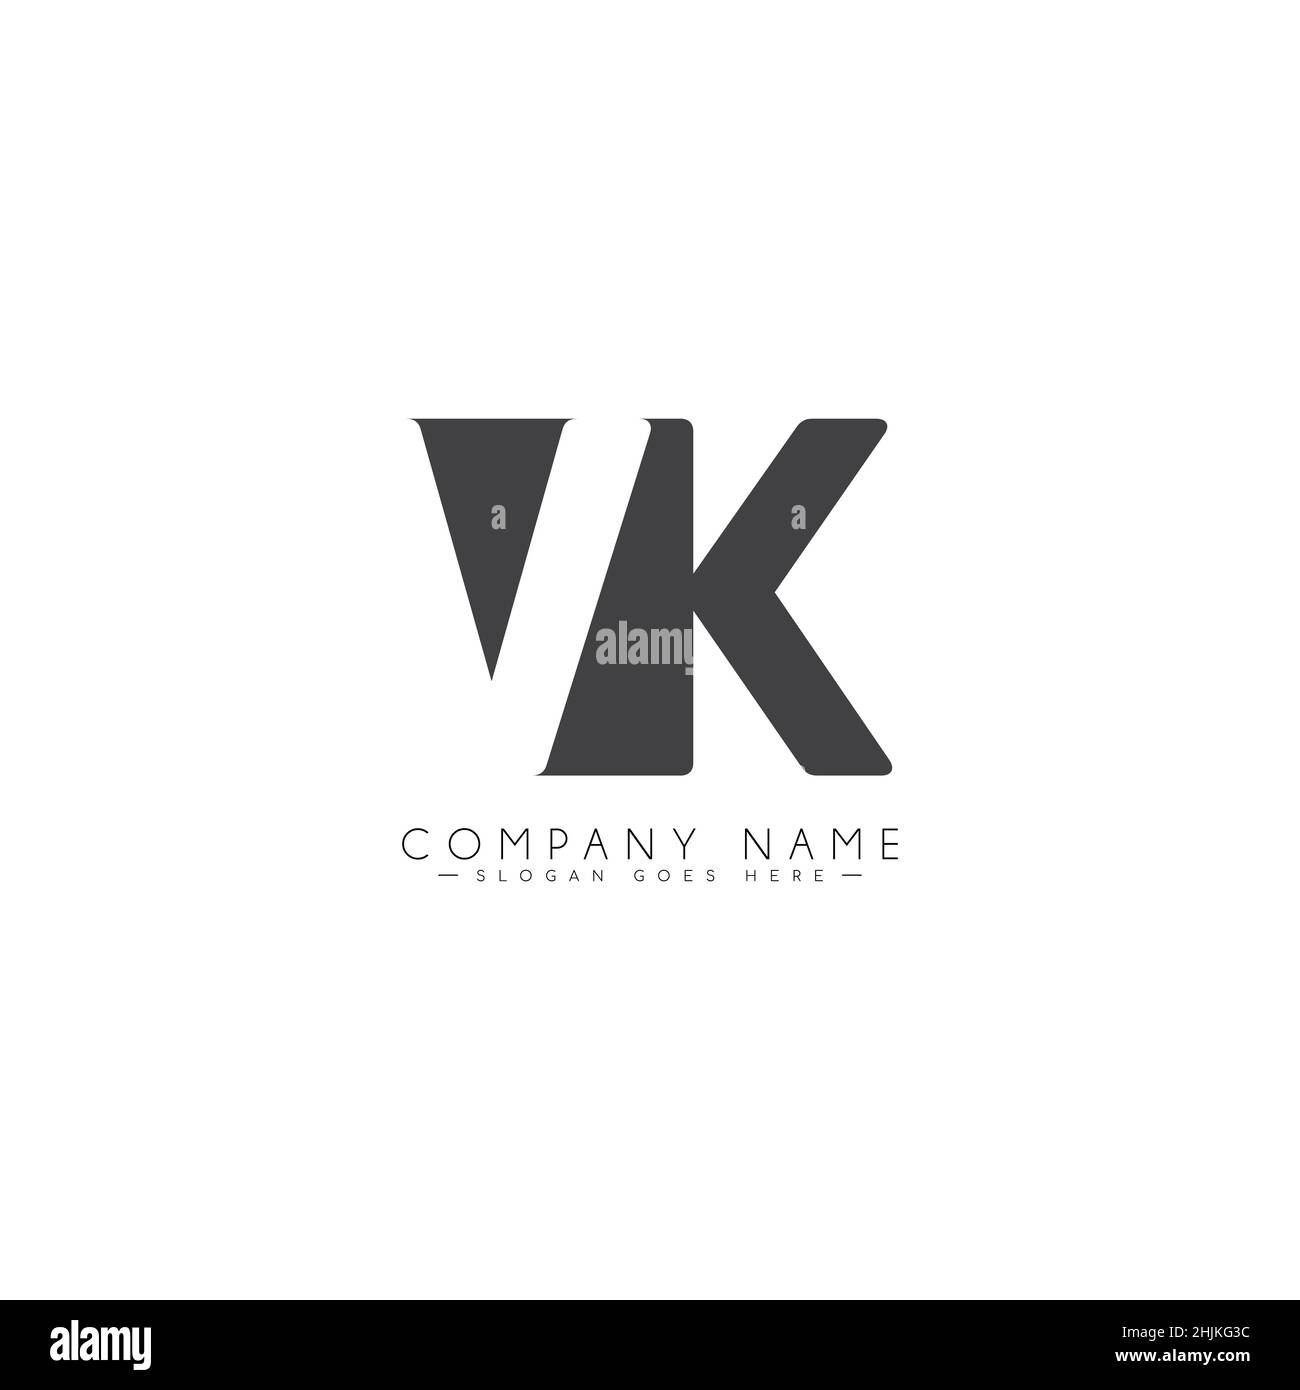 Vk Logo Fotografías E Imágenes De Alta Resolución Alamy